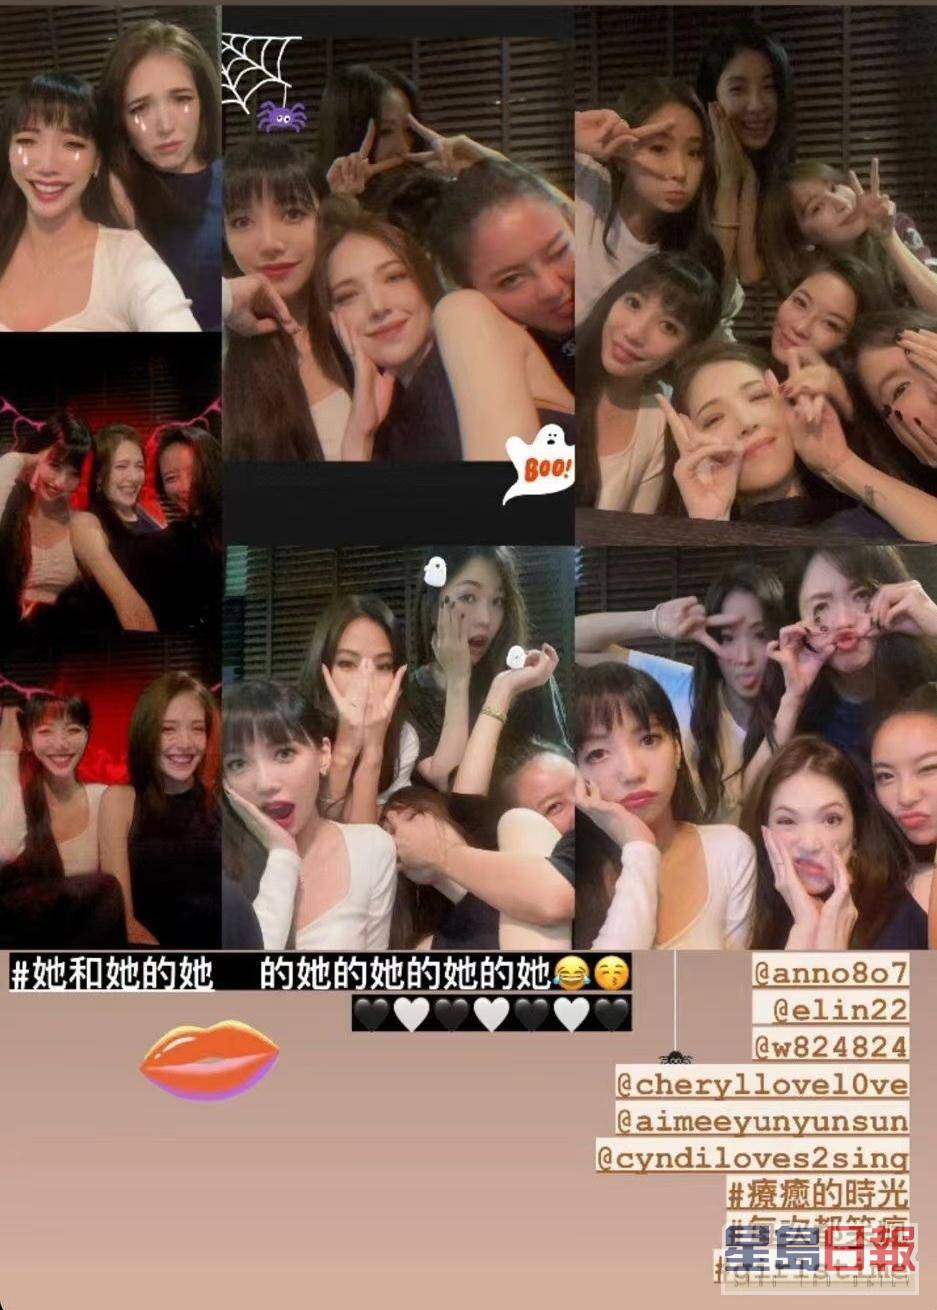 以上几位台湾名人，全是李靓蕾的闺密团成员！日前开万圣节派对玩得相当开心，不过照片被广传后，李靓蕾又将合照删除。